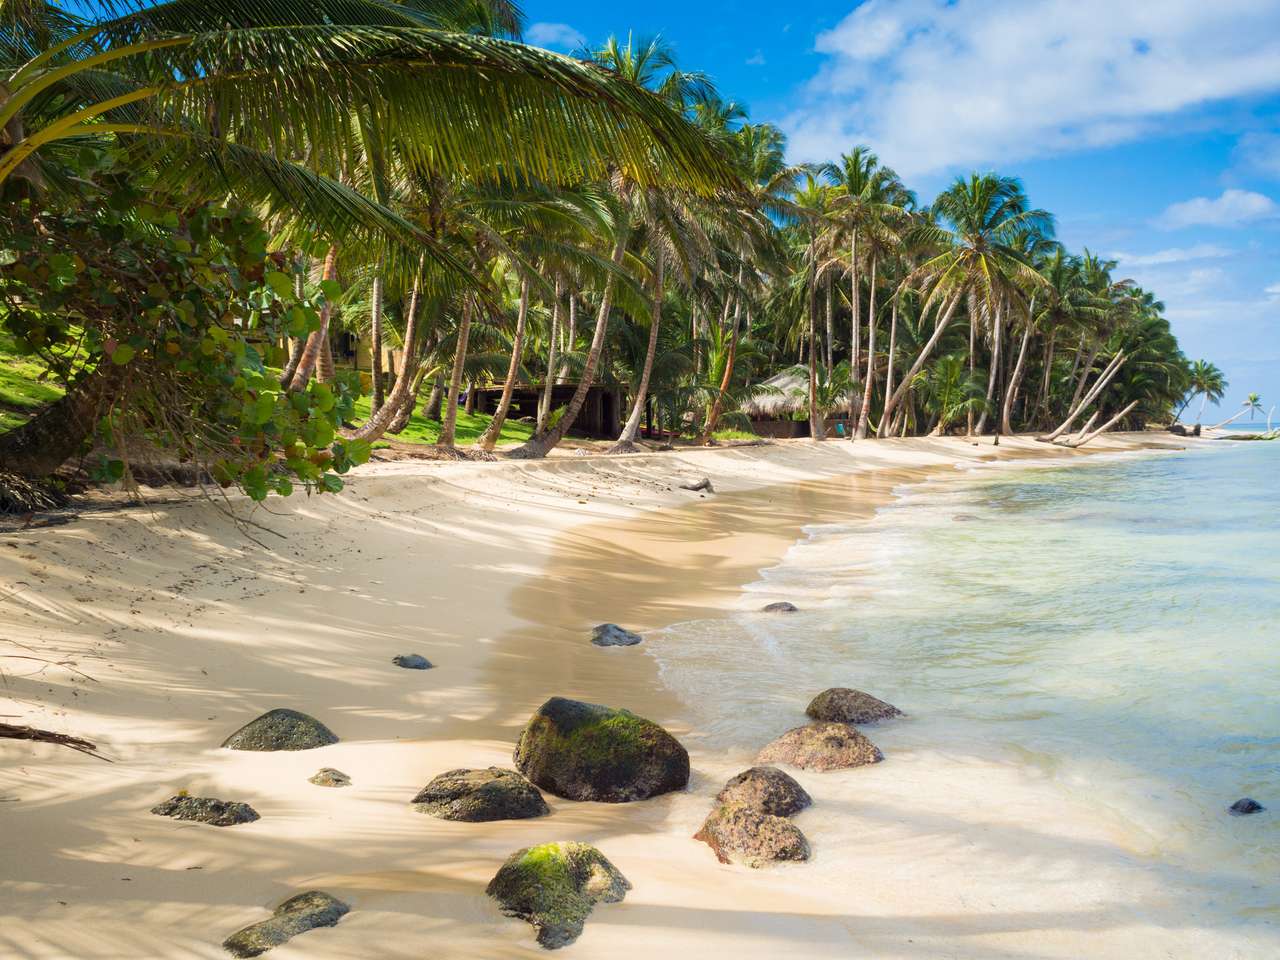 Тропический пляж с кокосовой пальмой на Карибском острове пазл онлайн